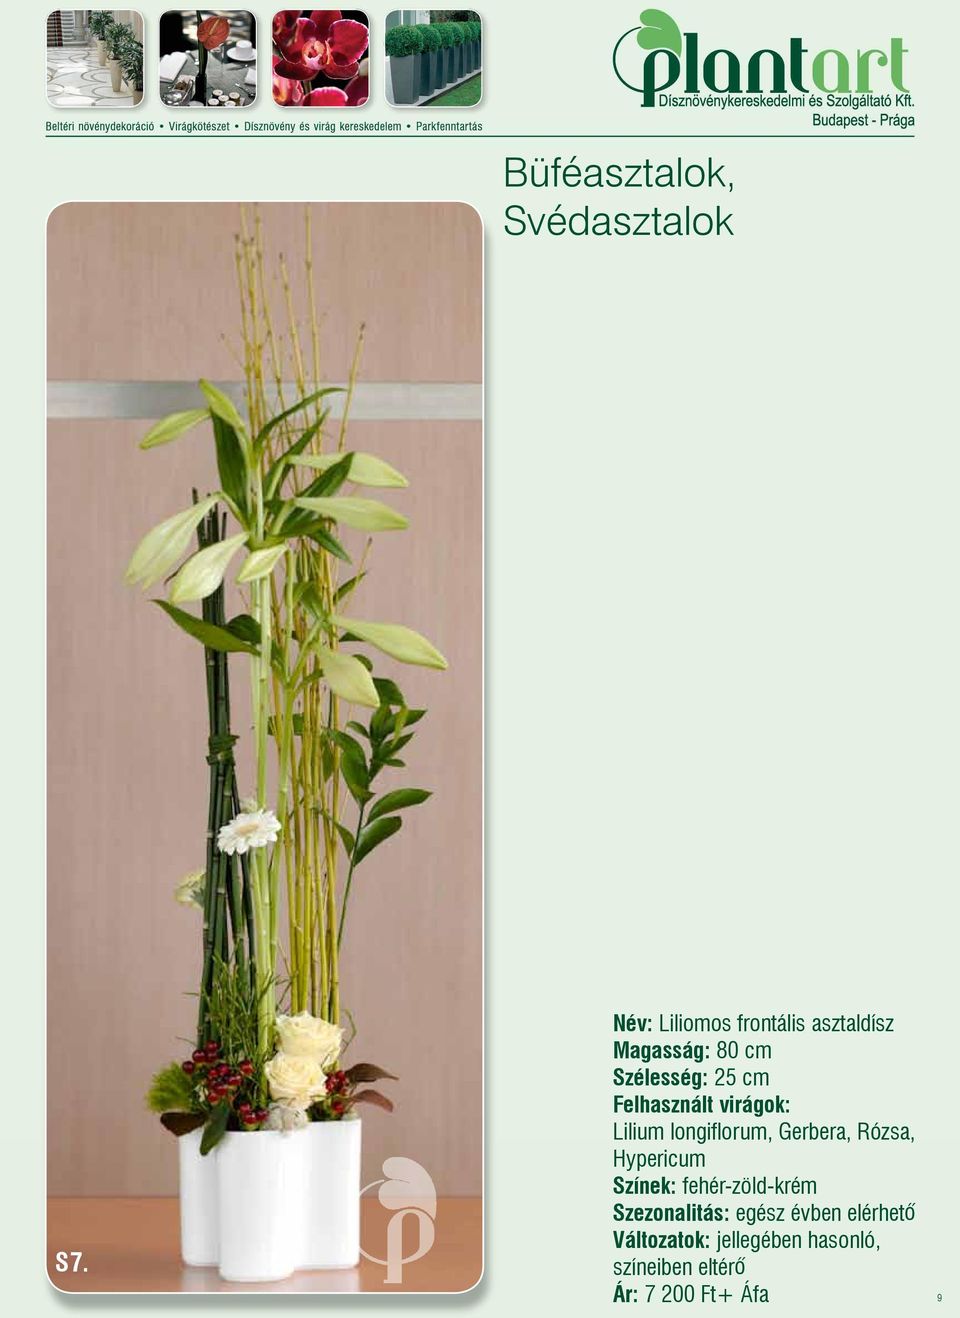 Szélesség: 25 cm Felhasznált virágok: Lilium